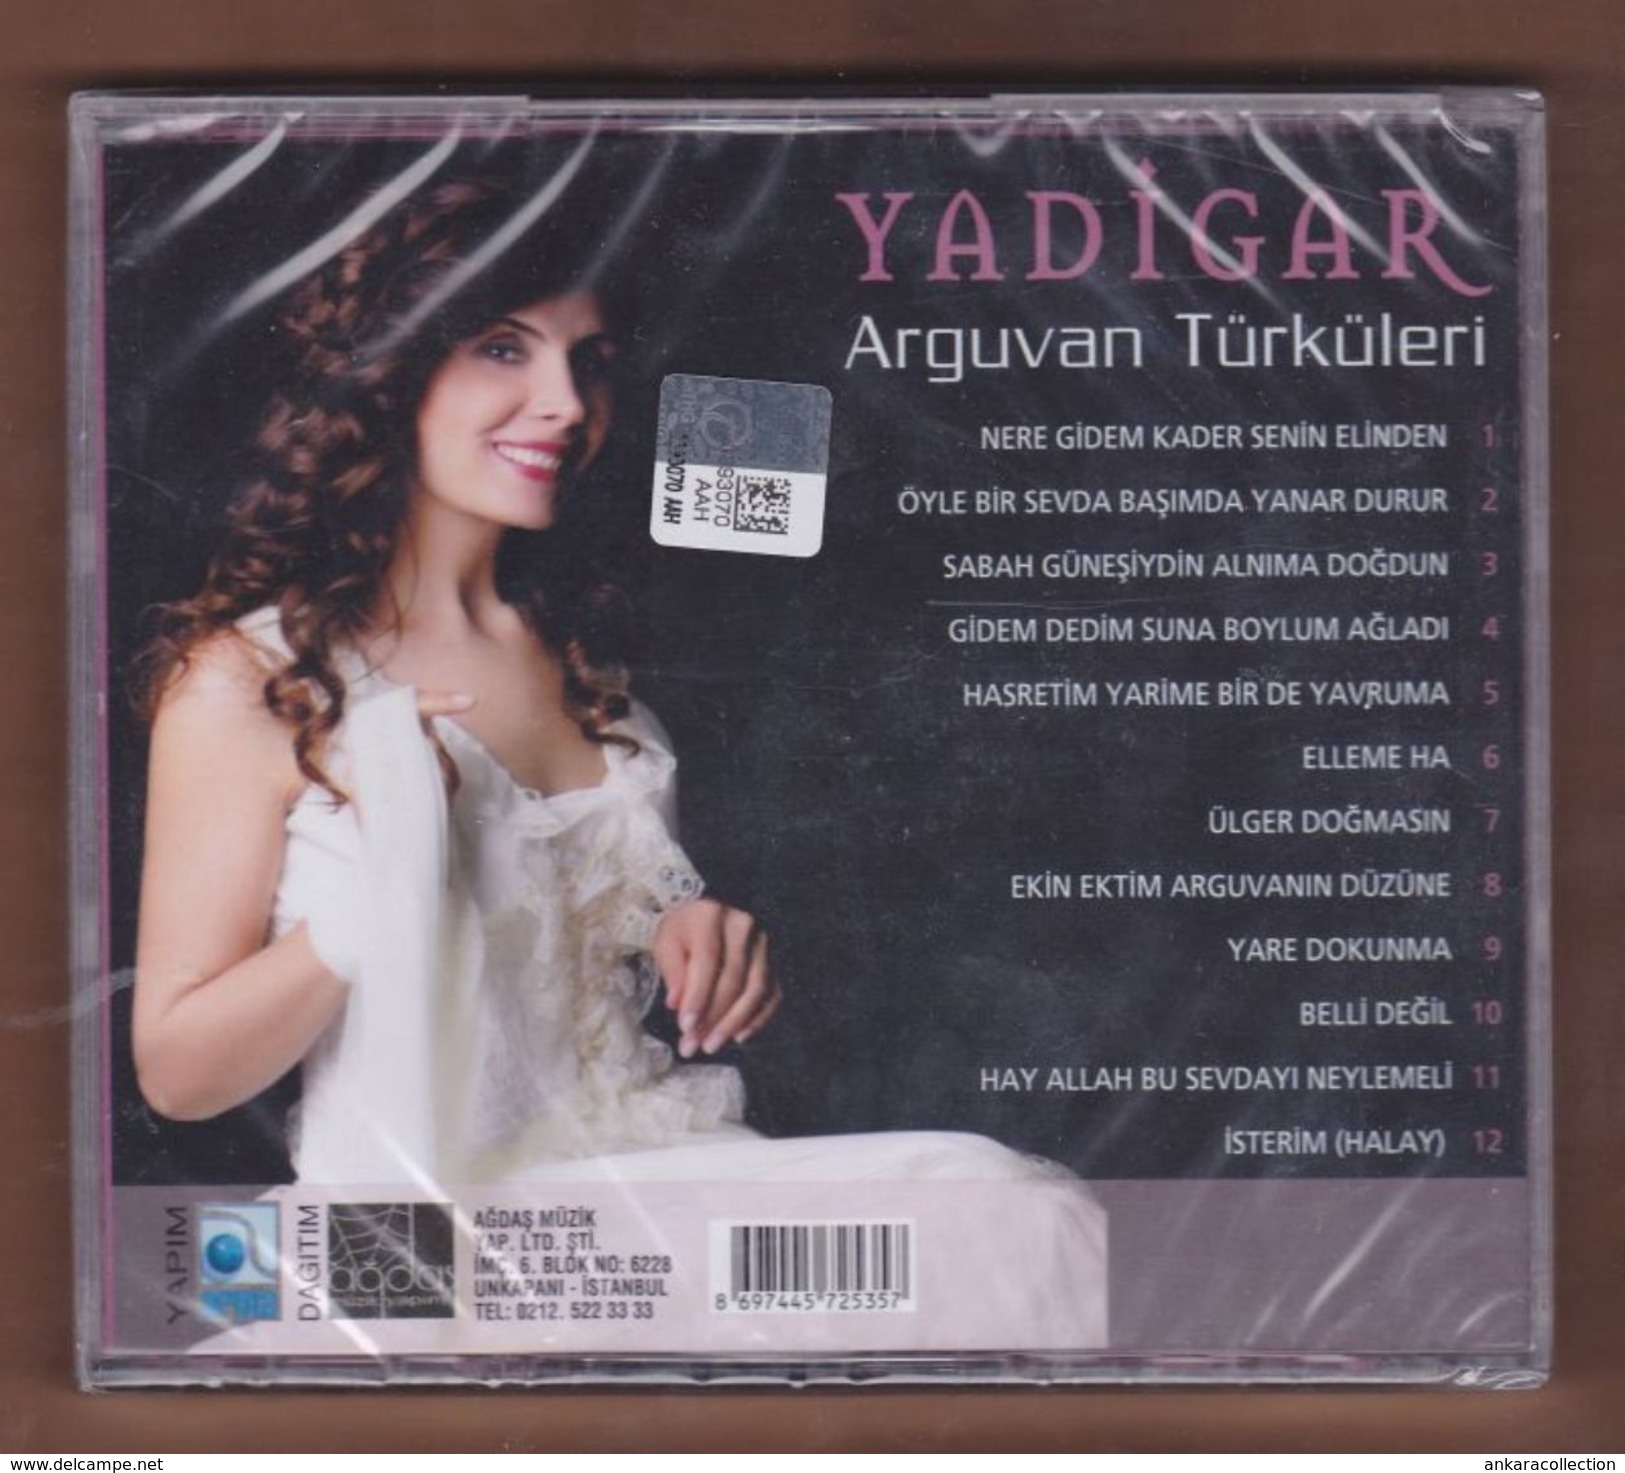 AC -  Yadigar Arguvan Türküleri BRAND NEW TURKISH MUSIC CD - World Music